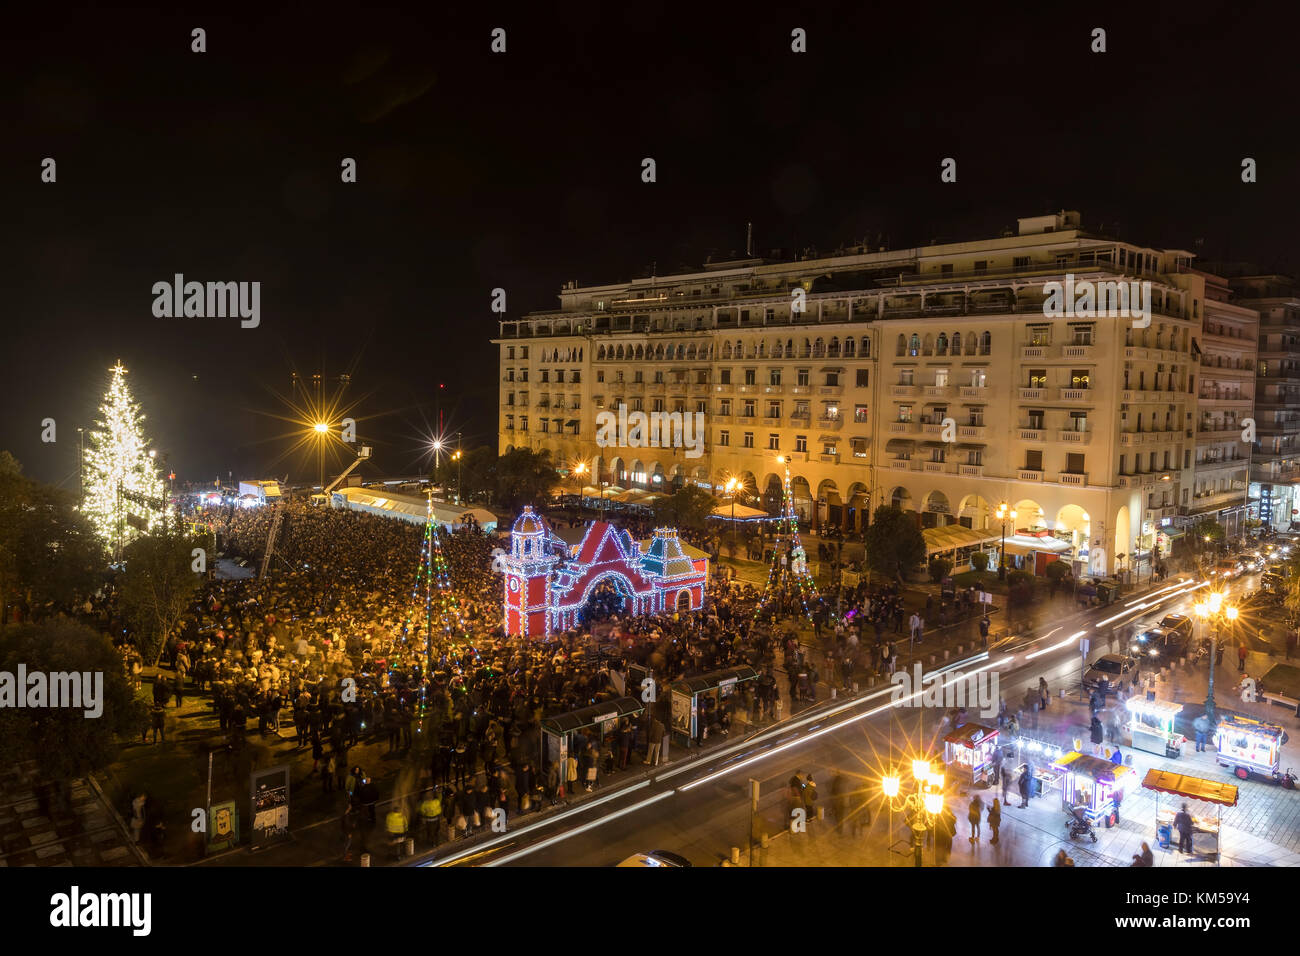 Thessalonique, Grèce - 30 novembre 2017 : foule de personnes dans la place d'Aristote de Thessalonique voit l'arbre de Noël au cours de la période de Noël. Banque D'Images